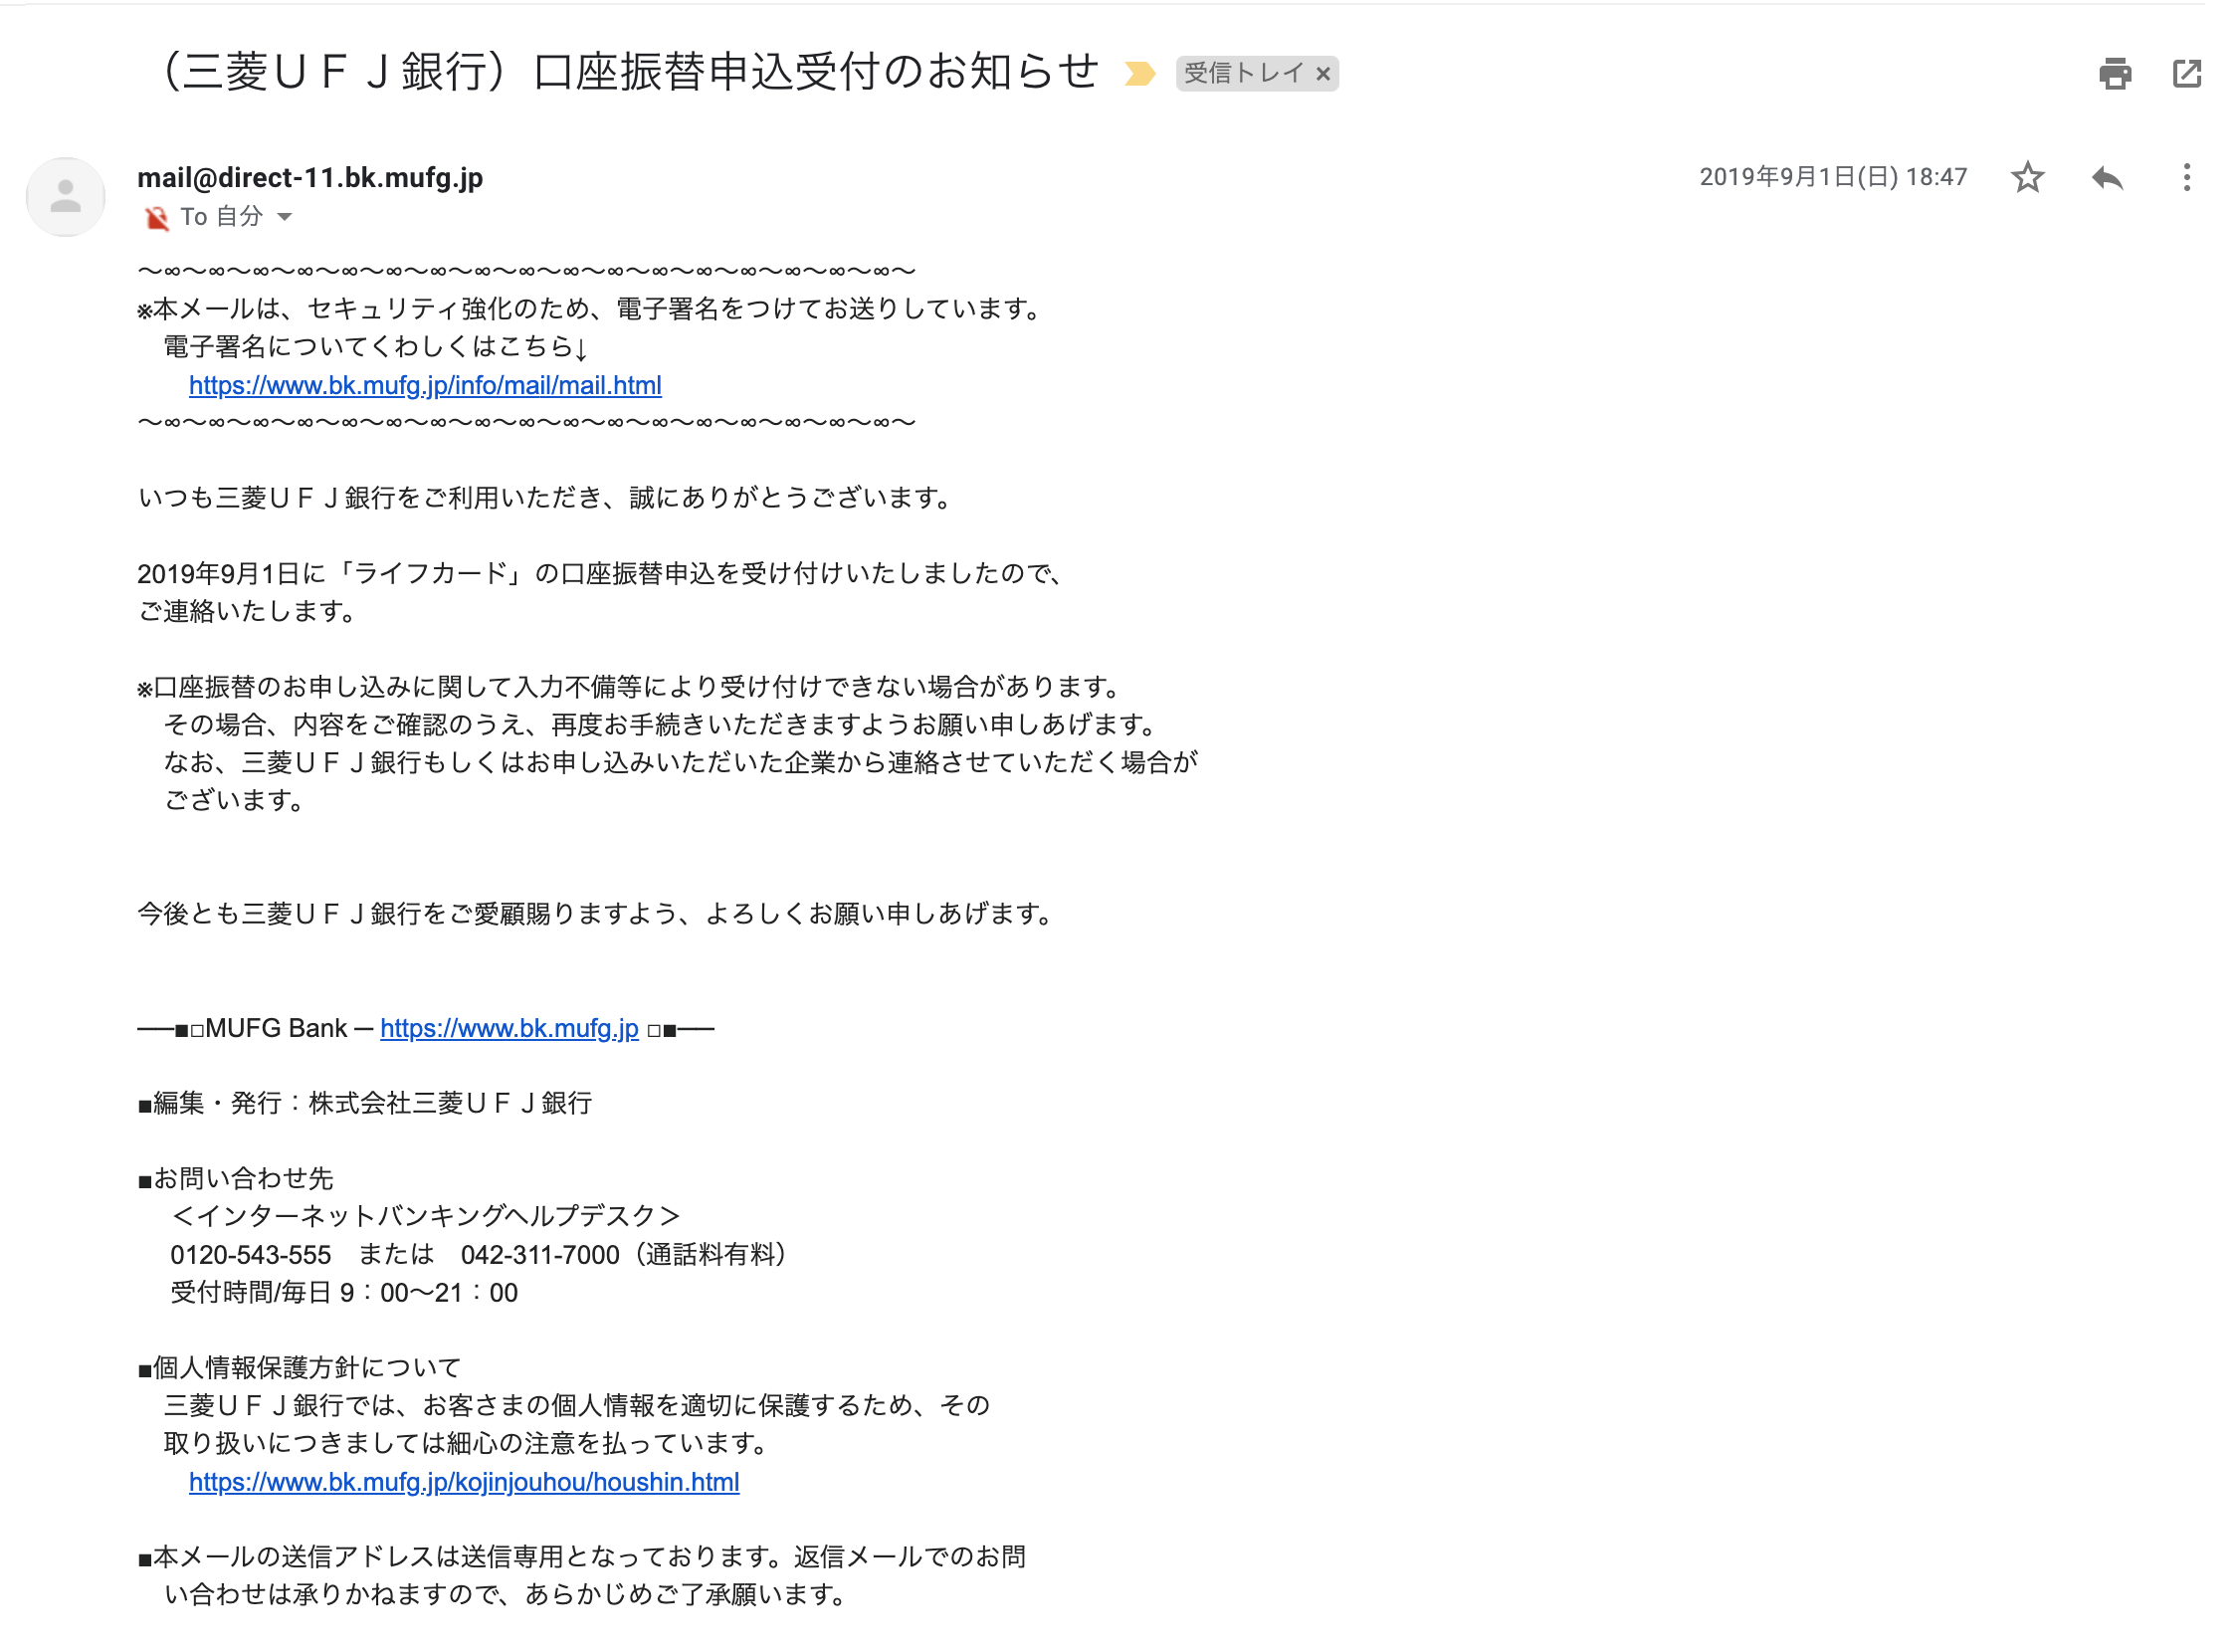 ライフカード口座登録完了メール（三菱UFJ銀行）